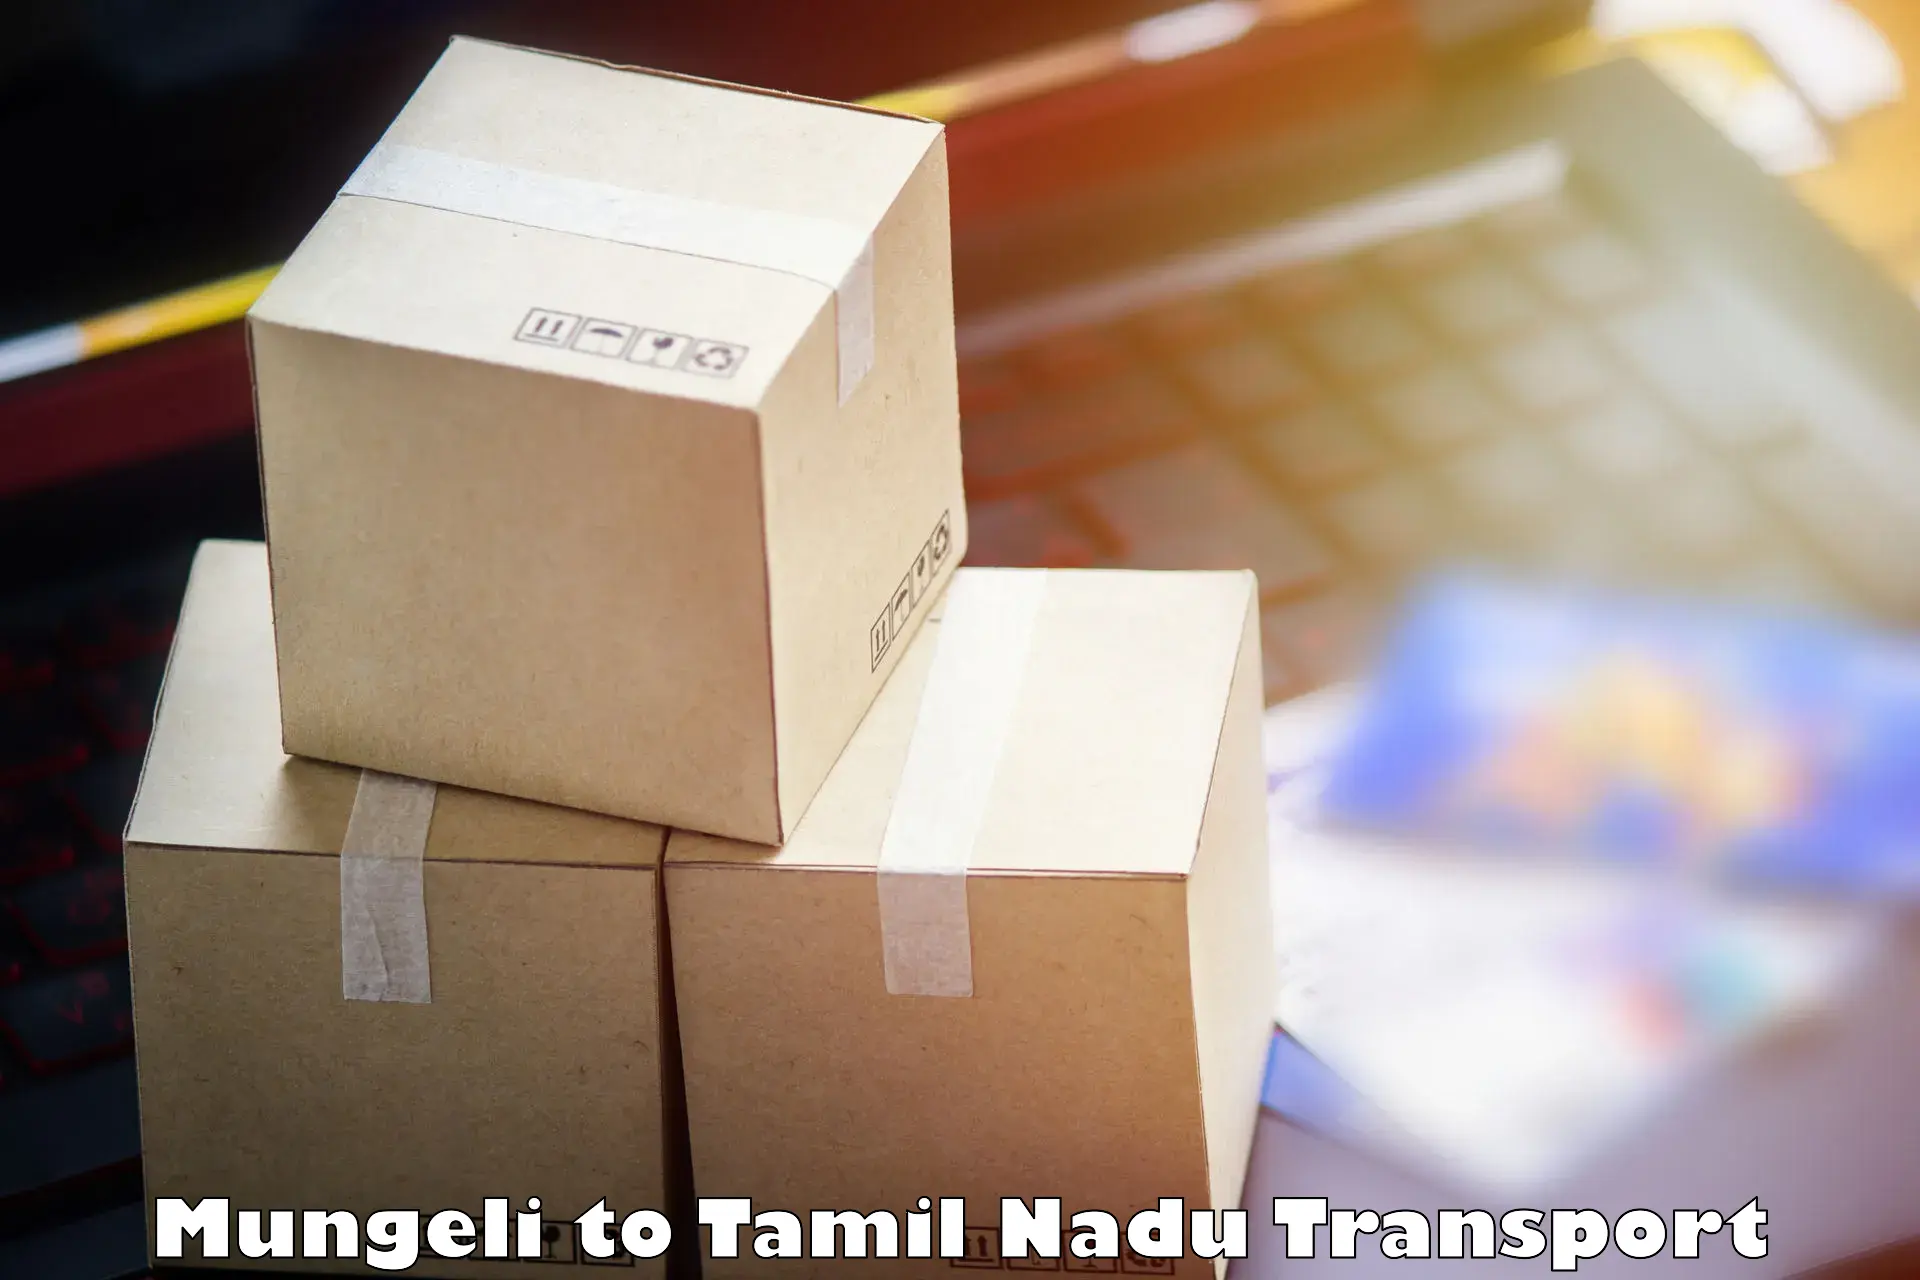 Air freight transport services Mungeli to Ambattur